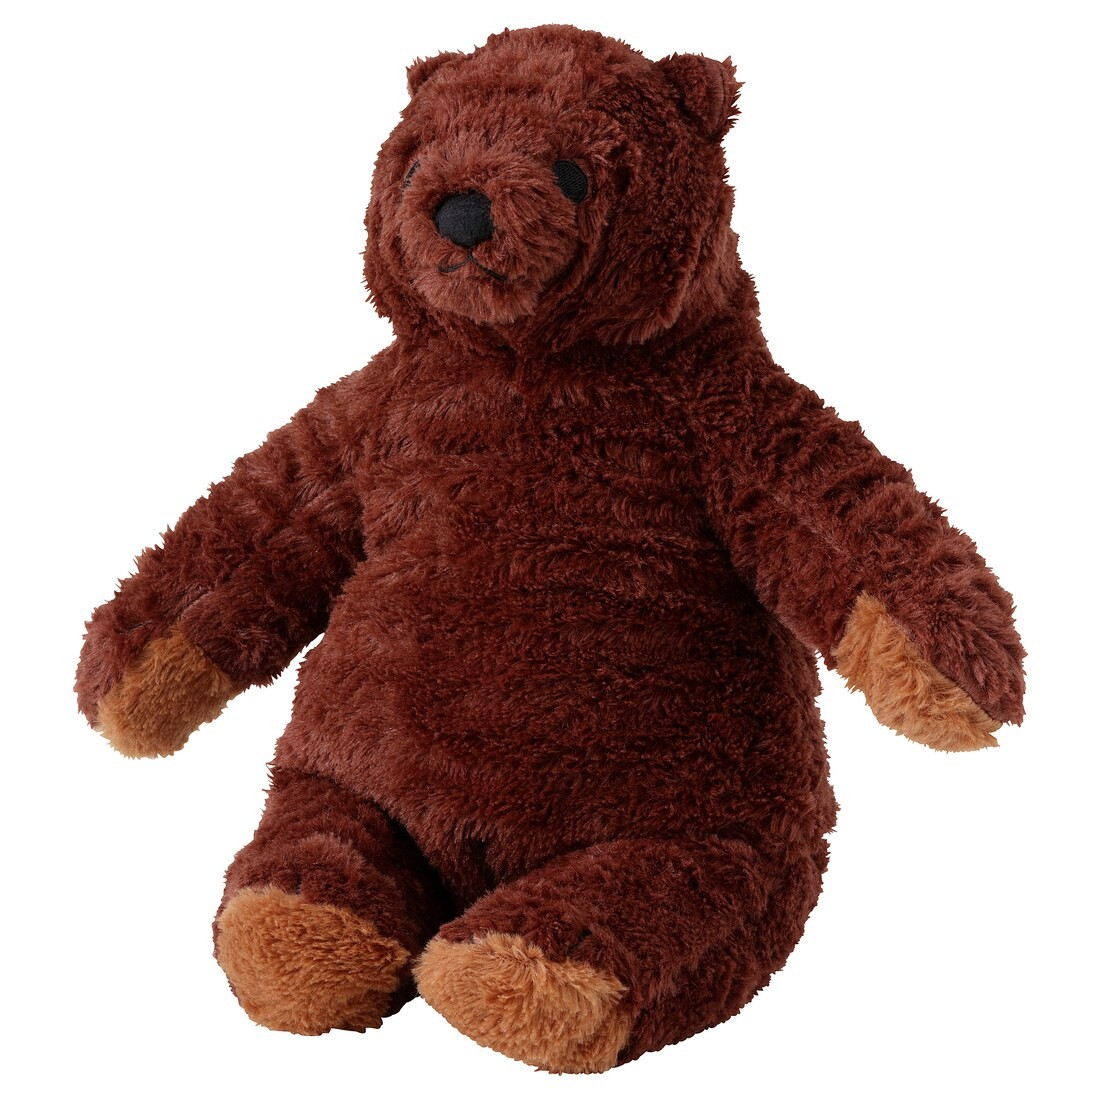 DJUNGELSKOG Іграшка м’яка, бурий ведмідь, 28 см